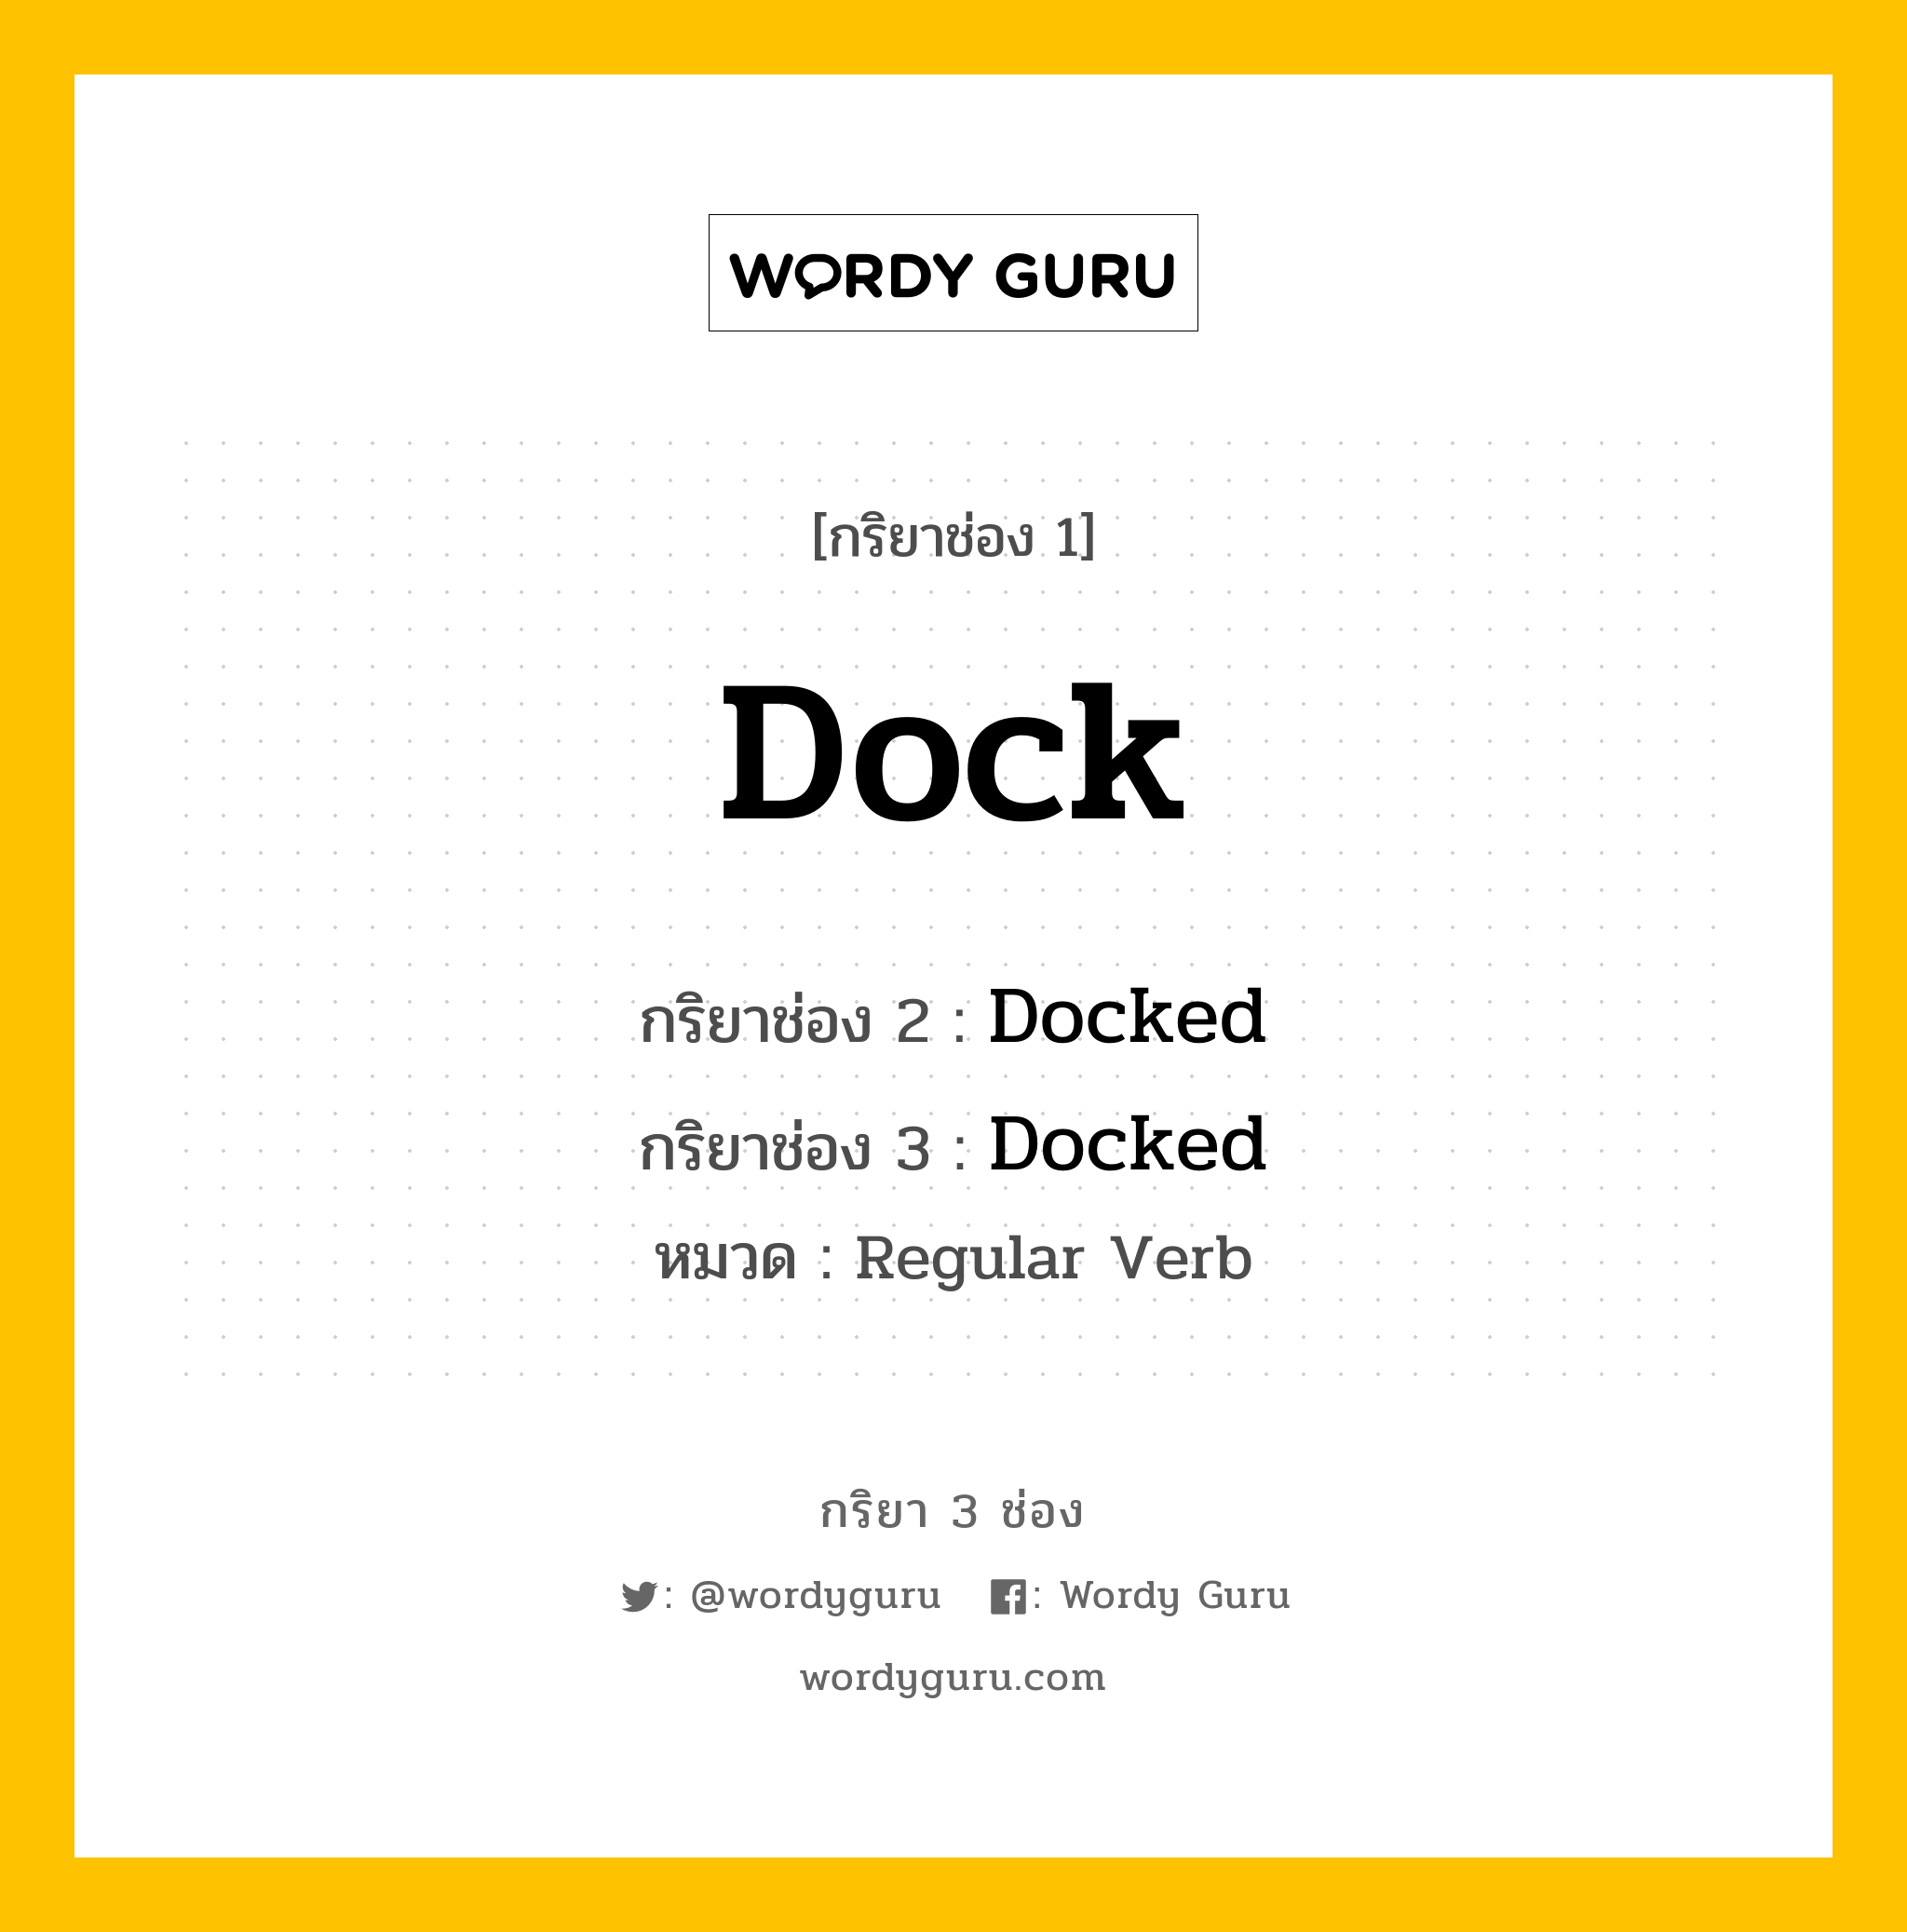 กริยา 3 ช่อง: Dock ช่อง 2 Dock ช่อง 3 คืออะไร, กริยาช่อง 1 Dock กริยาช่อง 2 Docked กริยาช่อง 3 Docked หมวด Regular Verb หมวด Regular Verb